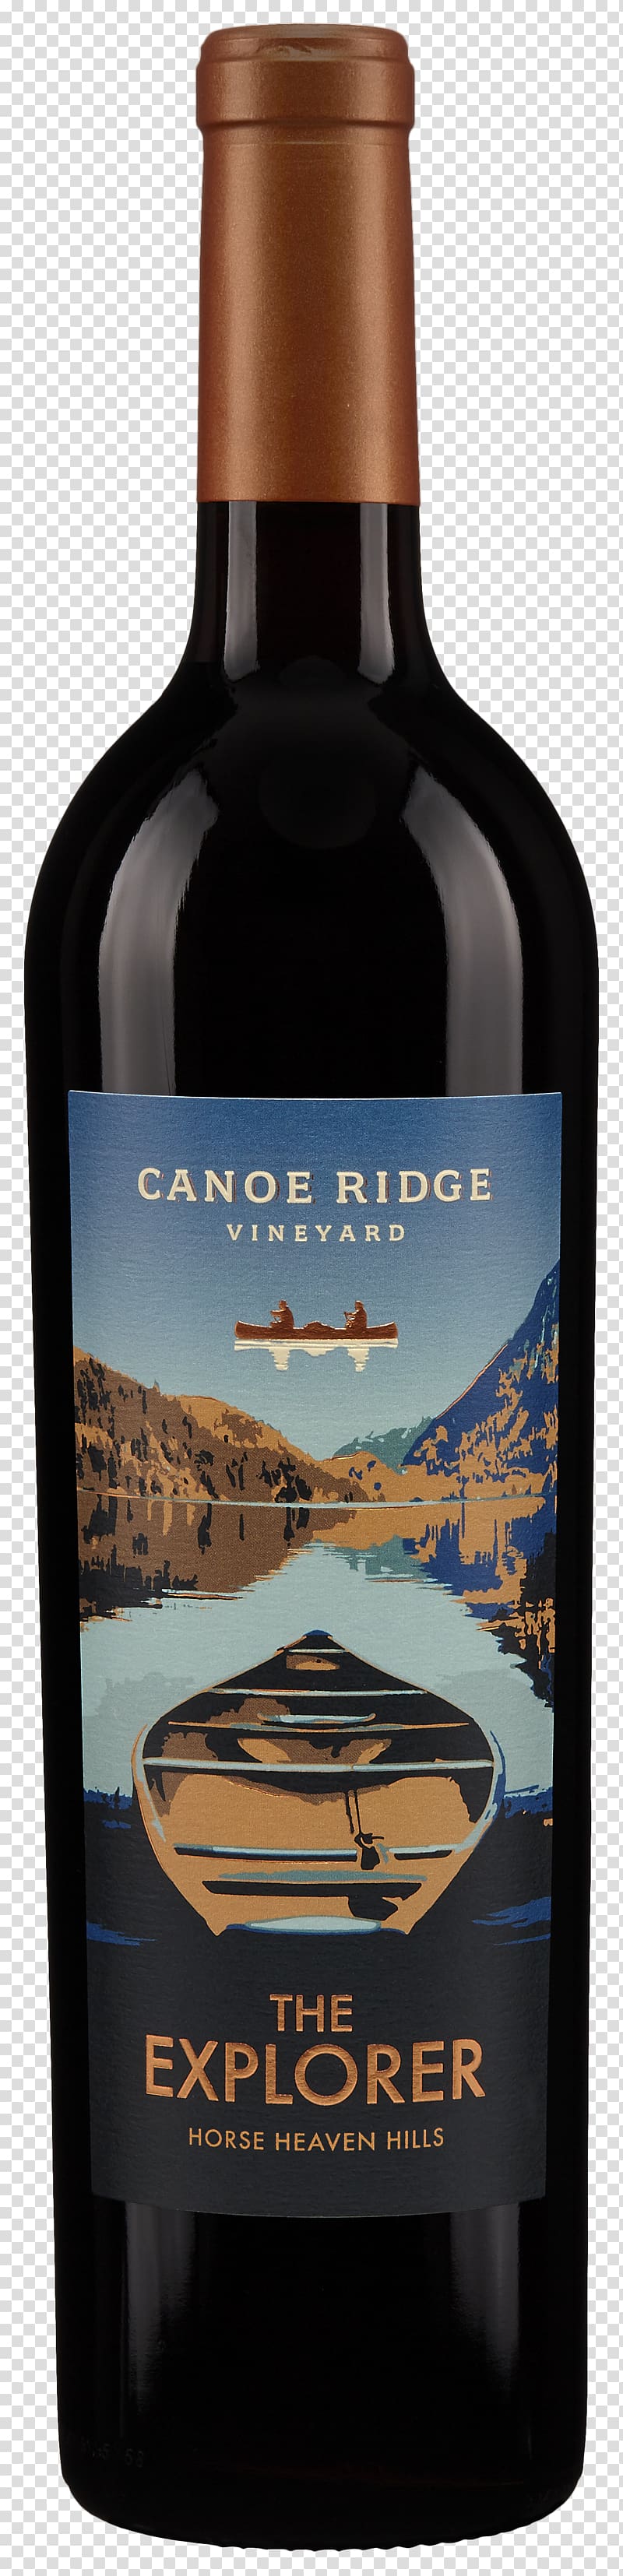 Liqueur Cabernet Sauvignon Wine Canoe Ridge Vineyard Cabernet Franc, wine transparent background PNG clipart